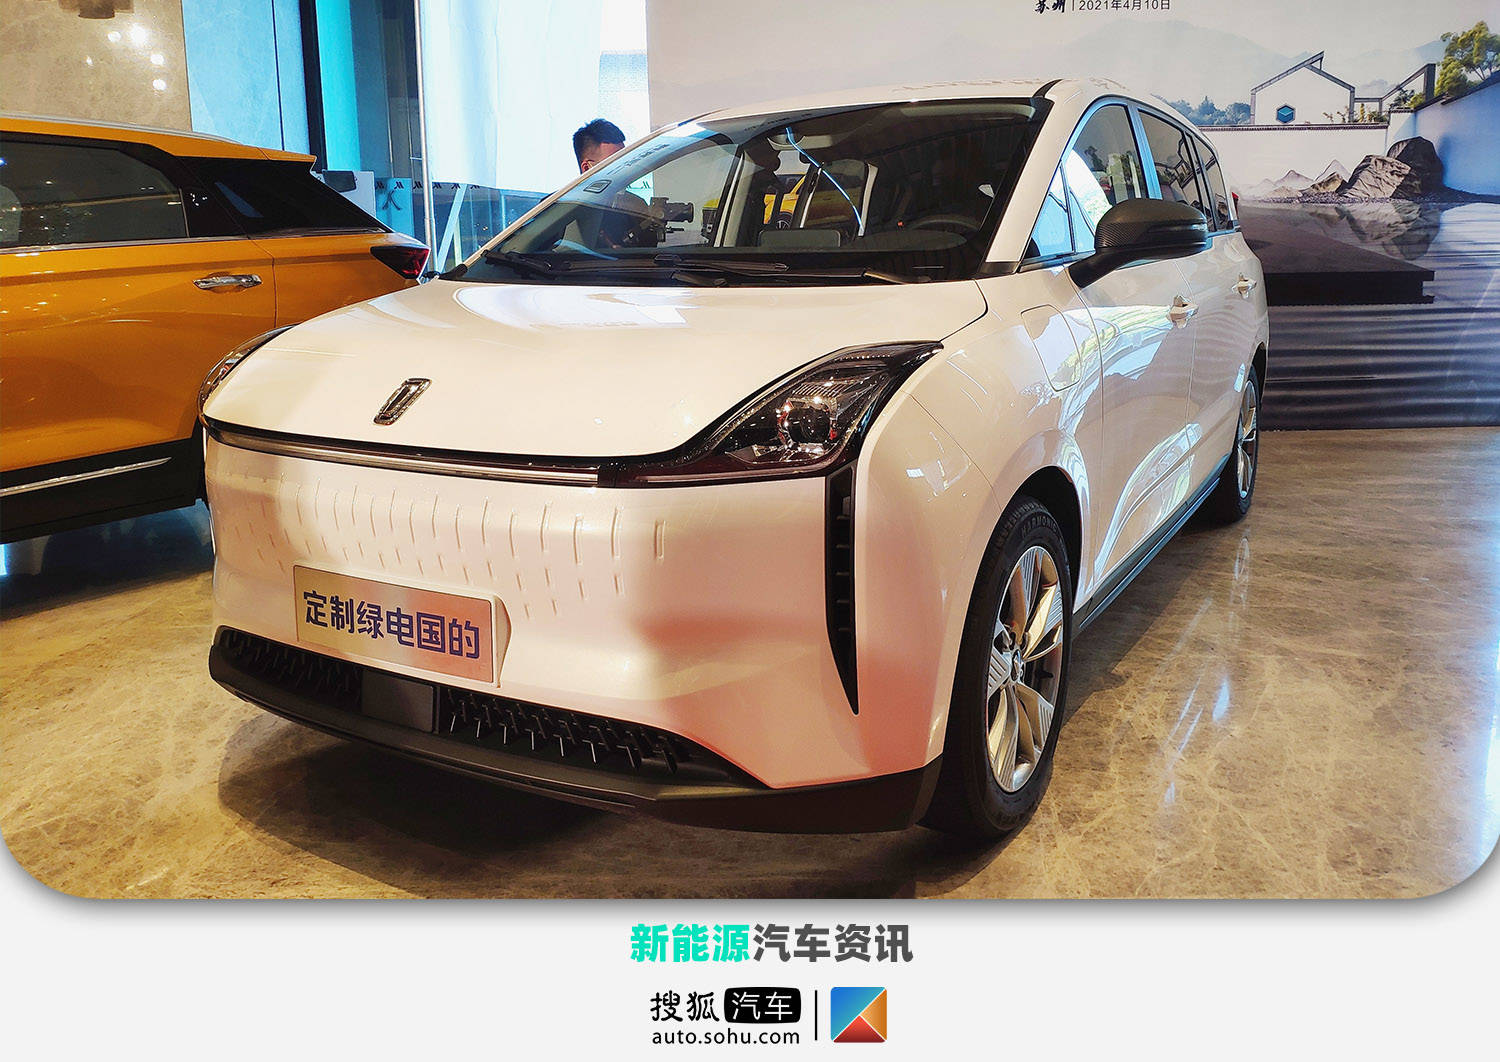 4月10日,一汽奔腾nat在苏州正式发布,新车共推出5款车型,分别为滴滴